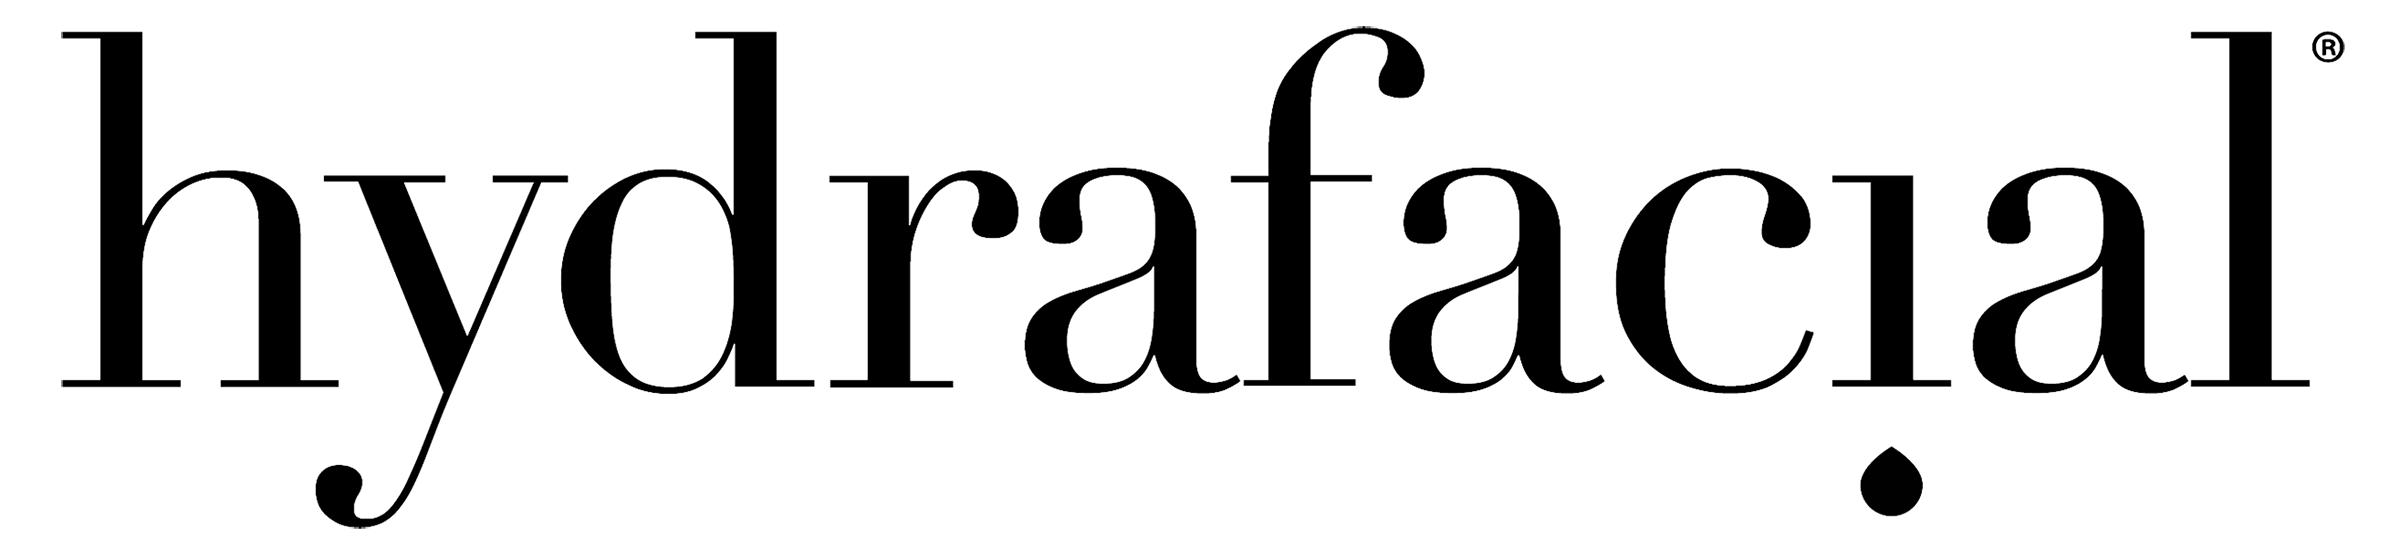 Hydrafacial Logo